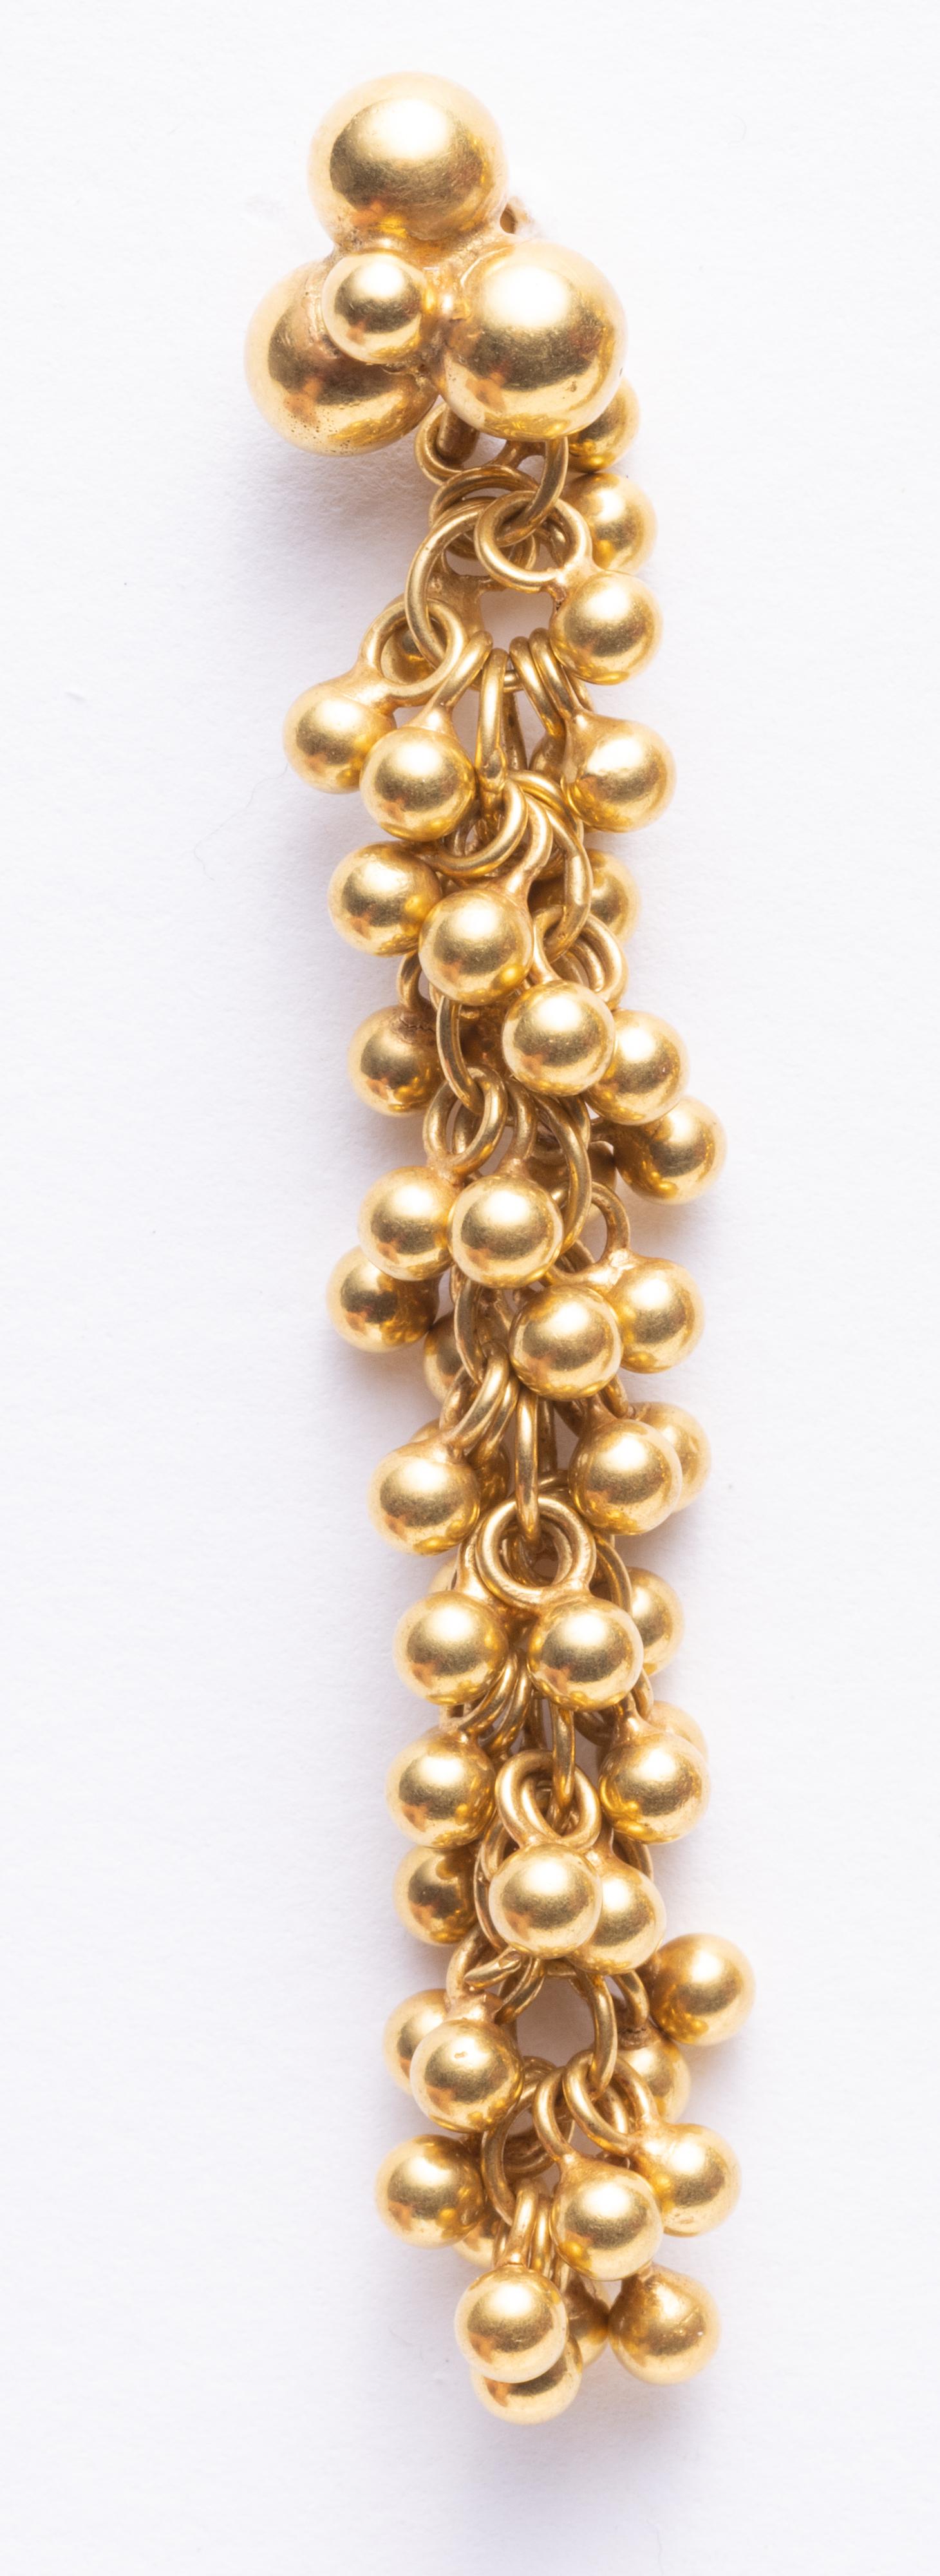 Une paire de boules d'or 18K perlées de façon complexe et tissées sur une longue chaîne, créant une boucle d'oreille longue et texturée avec du mouvement.  Des boules d'or plus grosses forment le tenon au niveau du lobe, pour les oreilles percées.